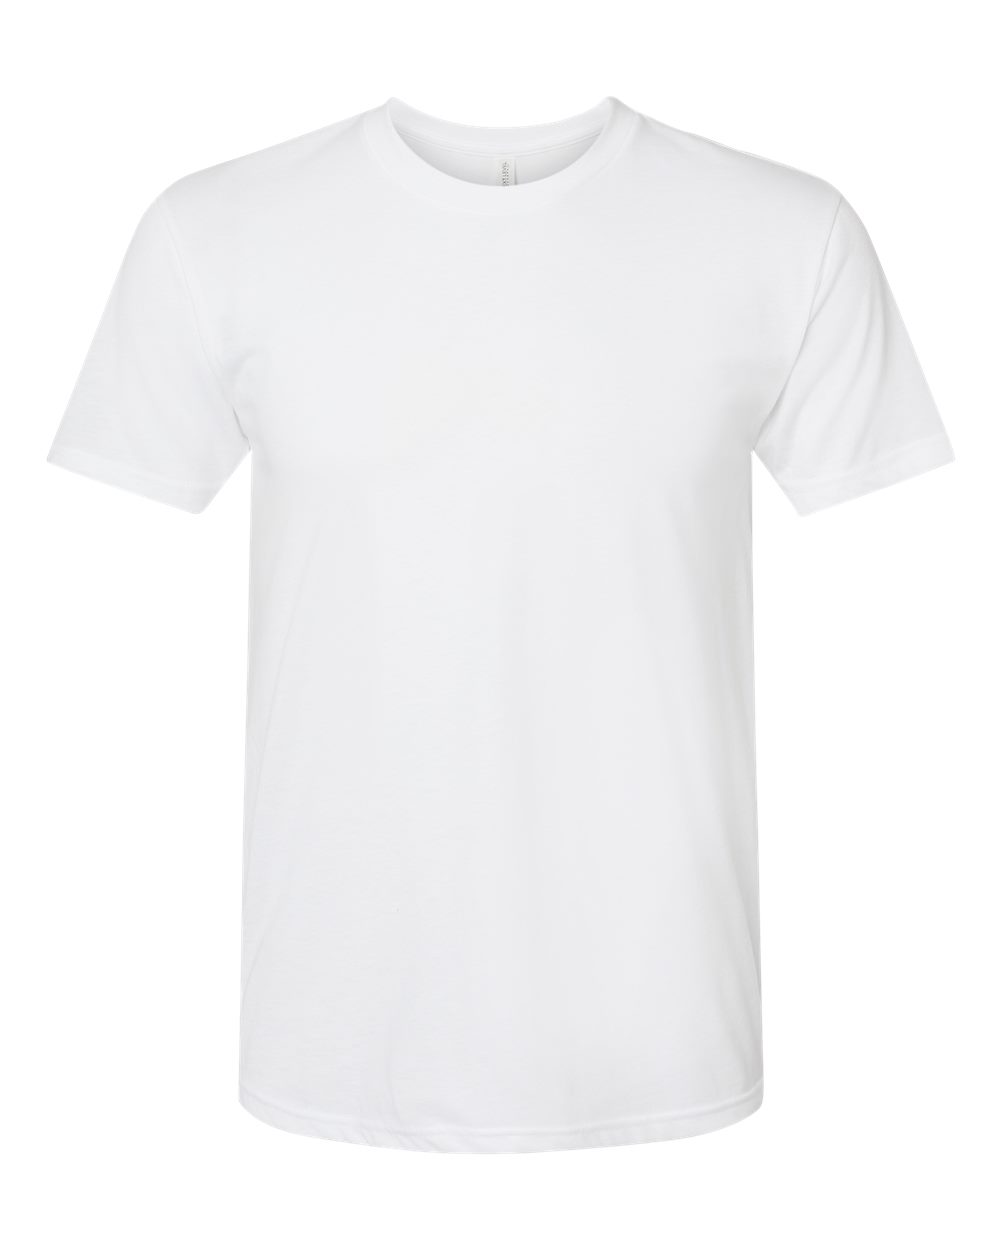 Next Level 6010 Triblend T-Shirt